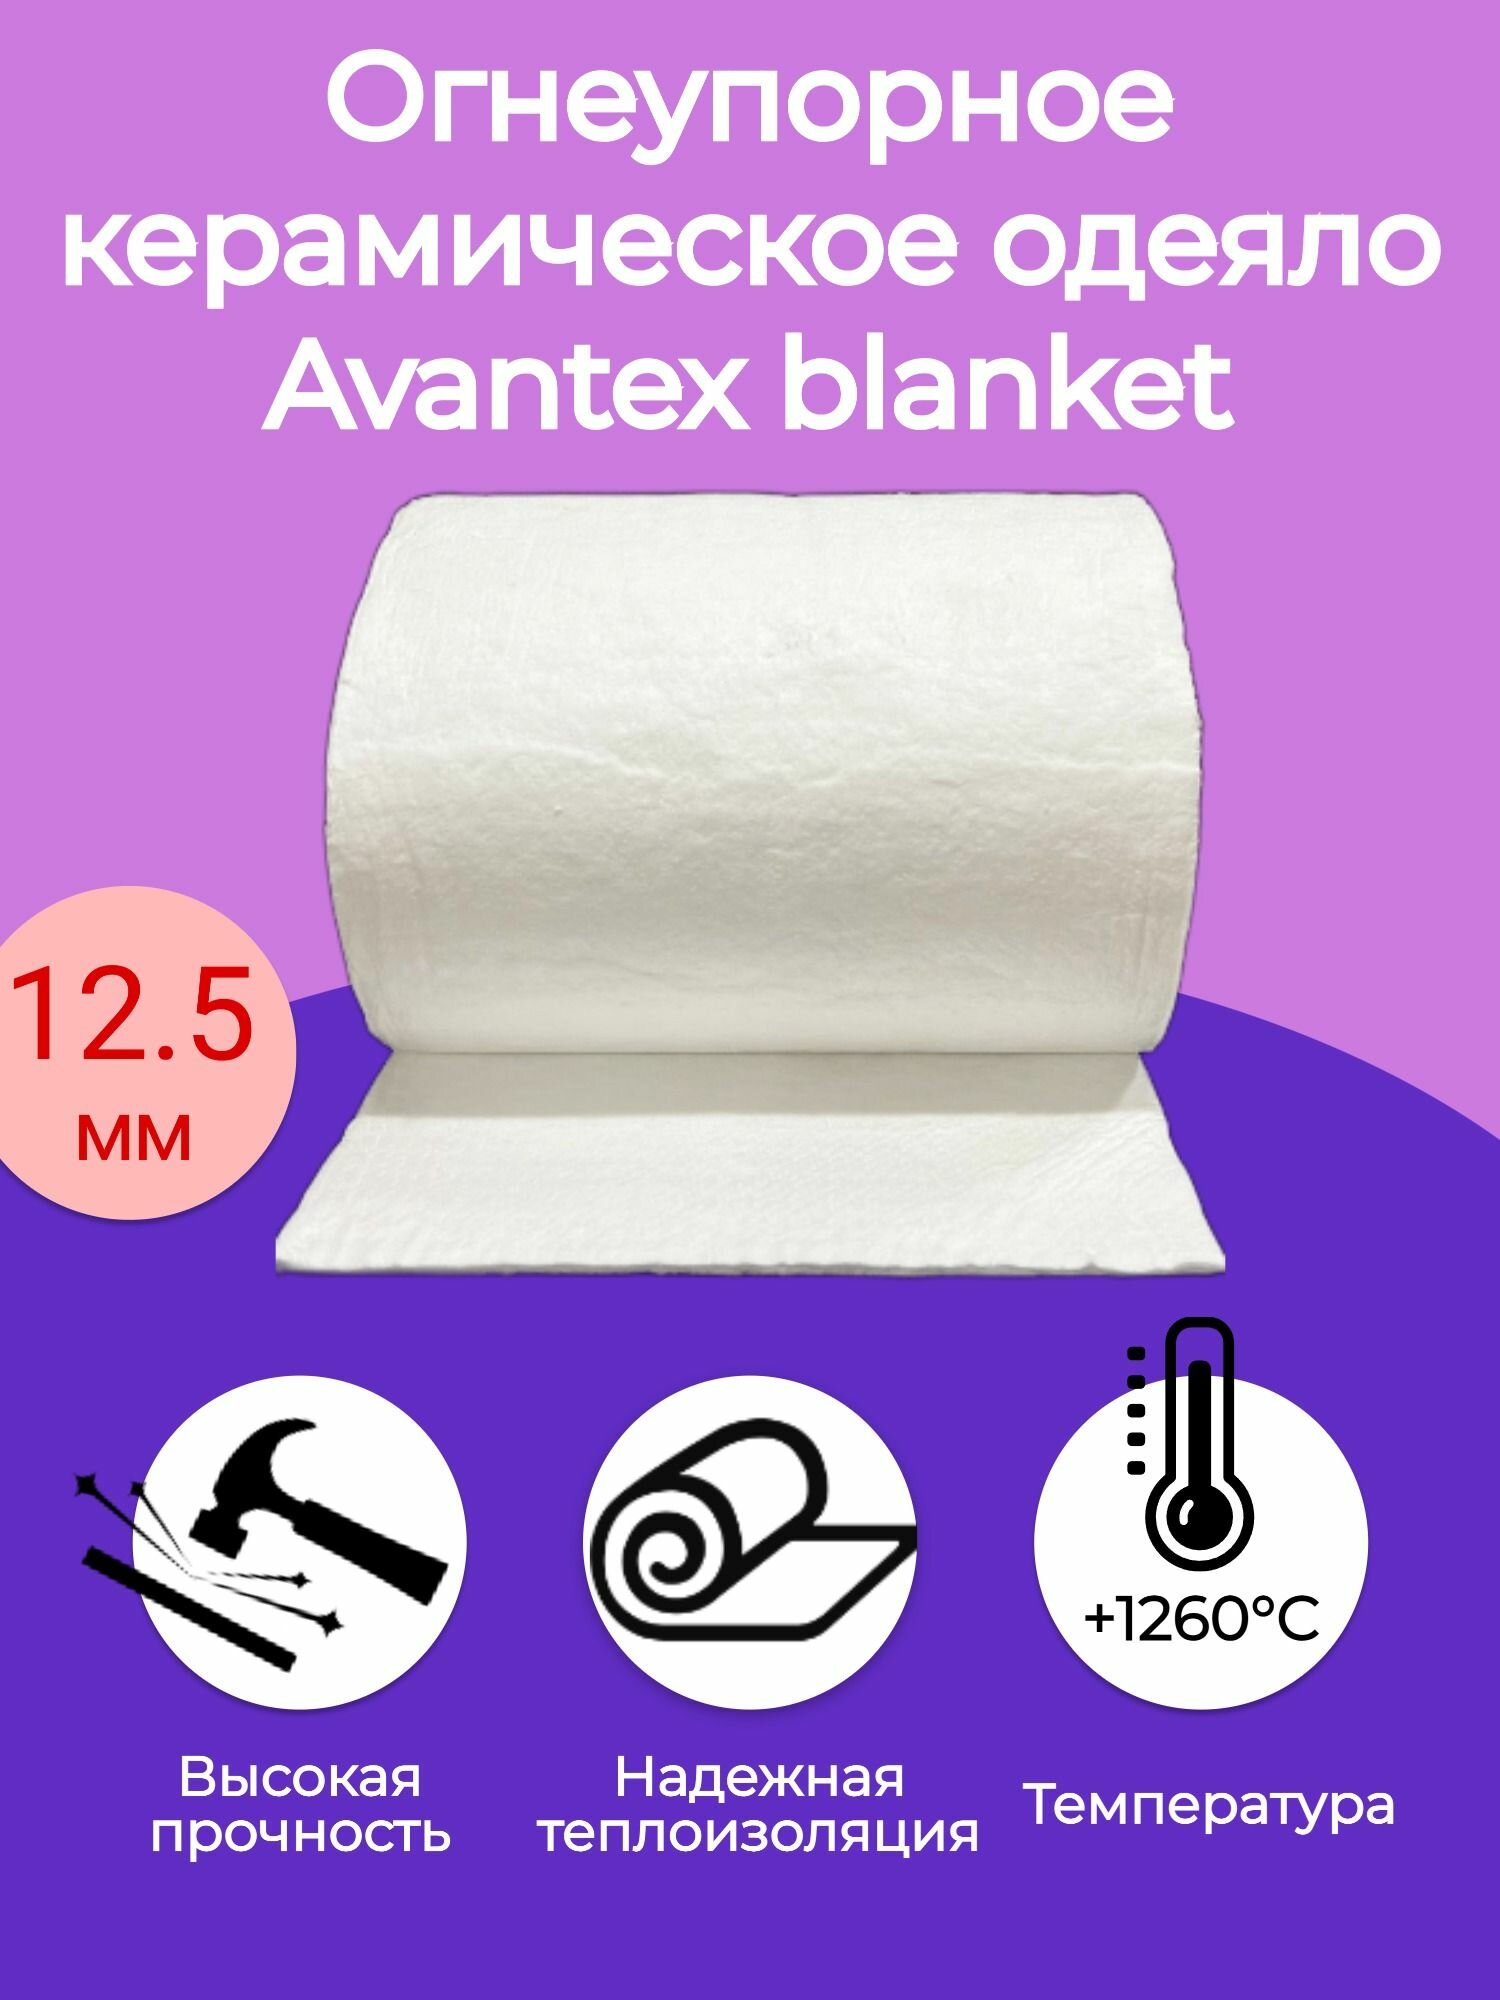 Огнеупорное керамическое одеяло. 3000х610х12,5мм. Плотность 128 кг/м3. Avantex blanket 1260 С